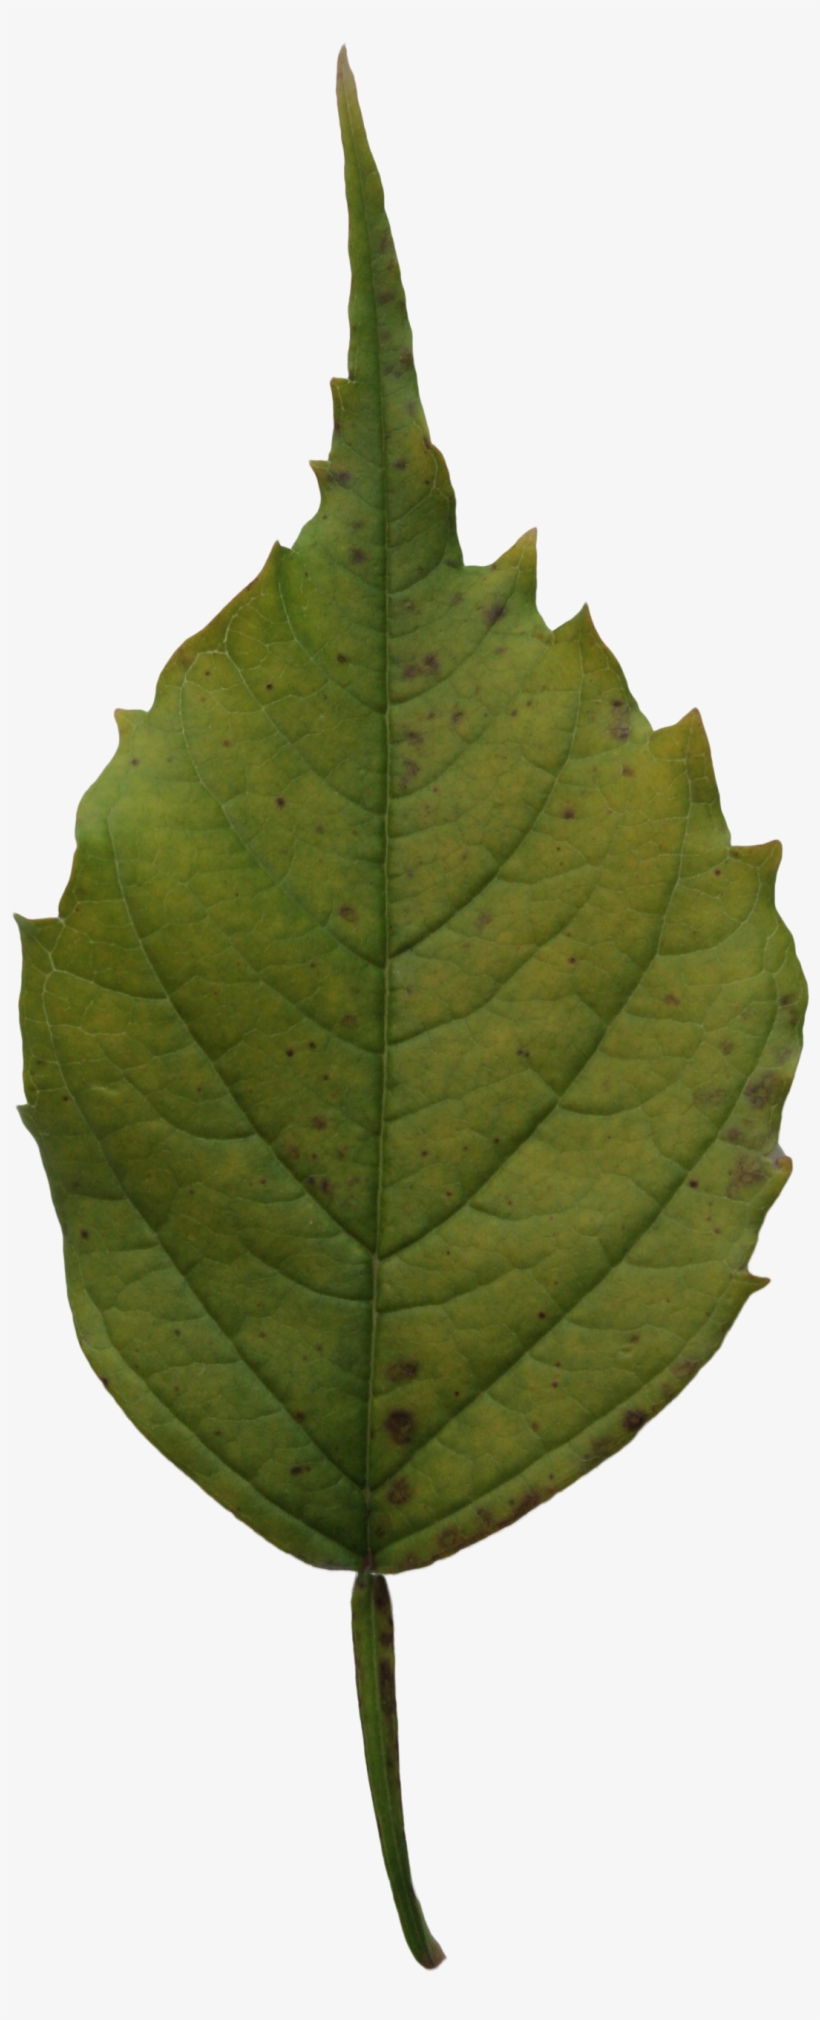 2d Leaves - Leaf, transparent png #3634820